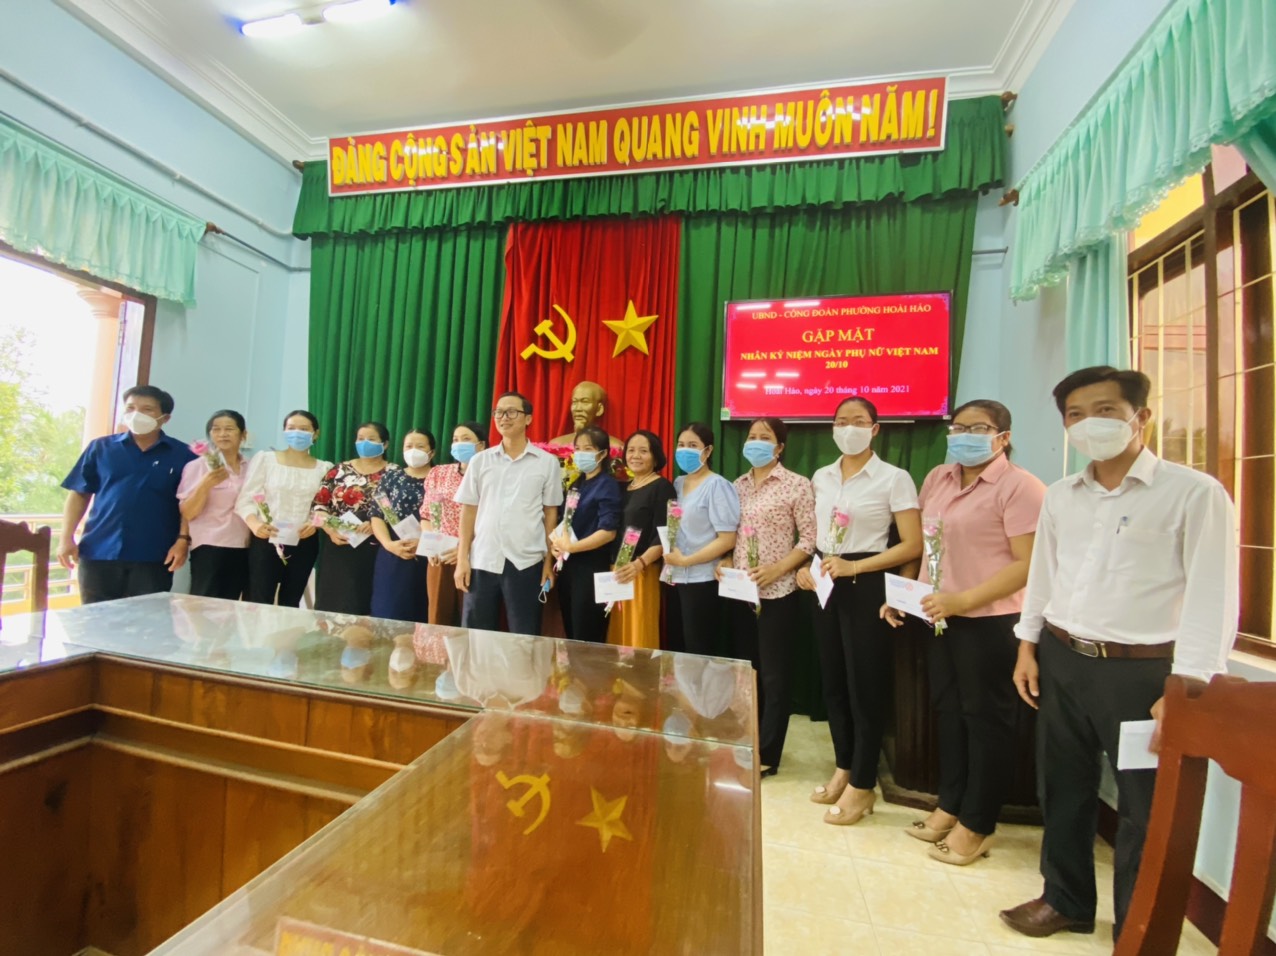 Lãnh đạo phường tặng hoa và quà chúc mừng ngày Phụ nữ Việt Nam 20-10 cho chị em phường Hoài Hảo